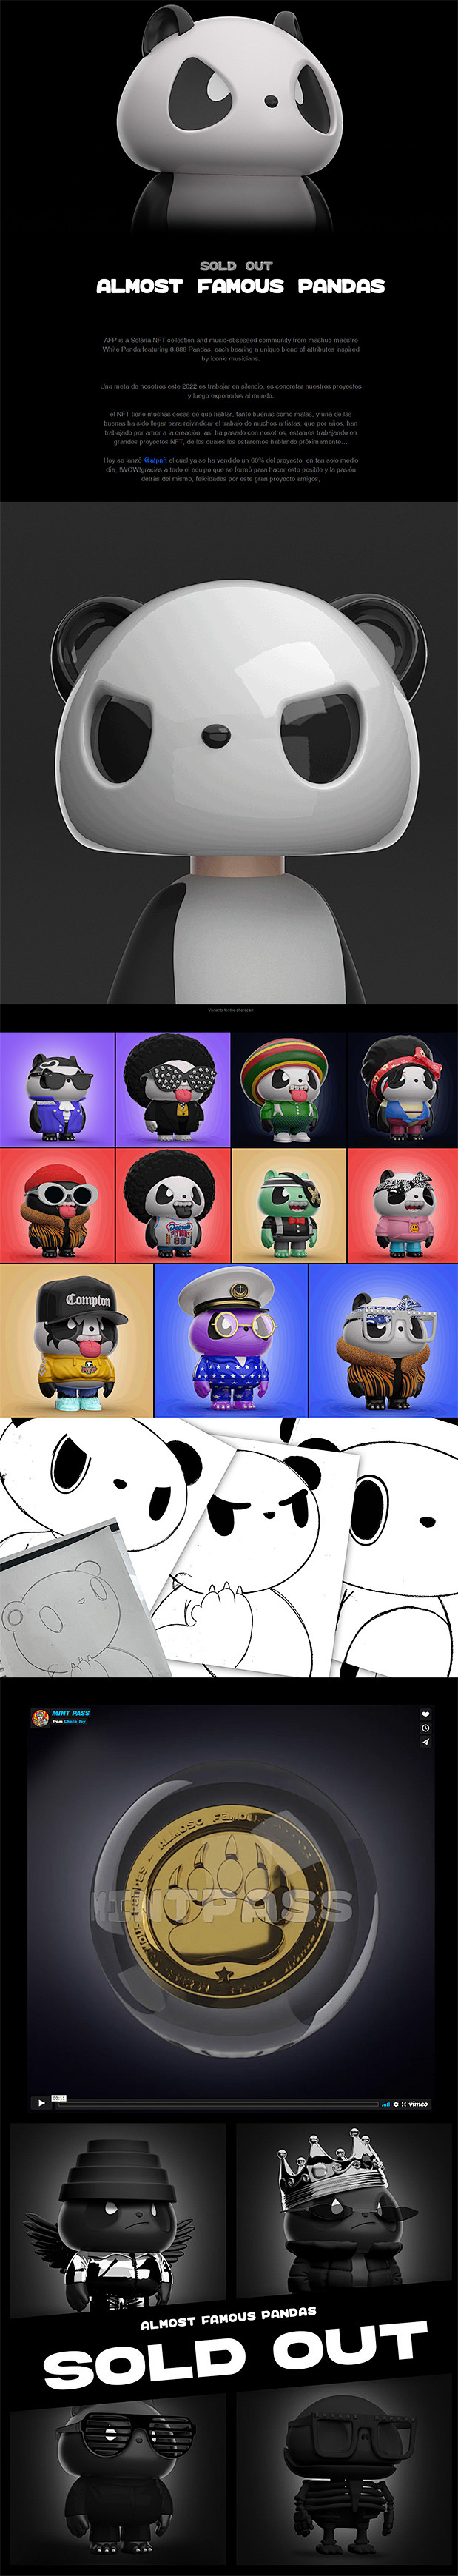 Almost Famous Pandas...